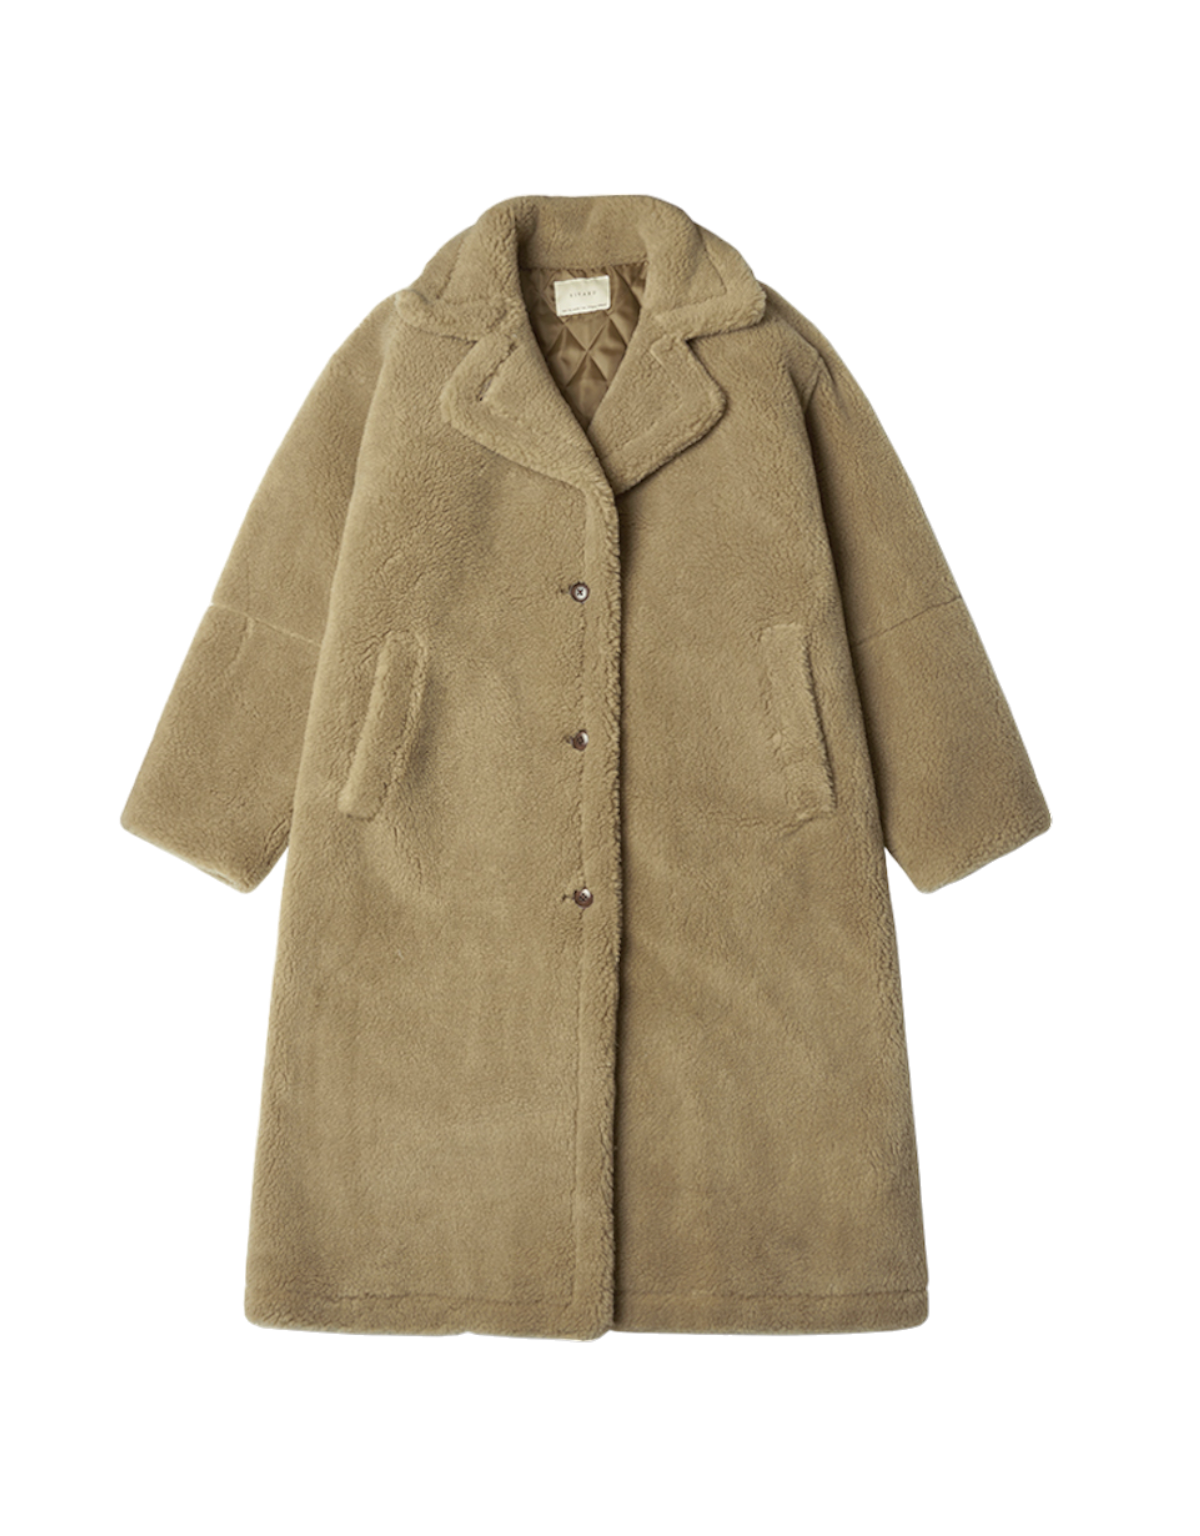 Wool Blend Teddy Long Coat In Teddy Brown